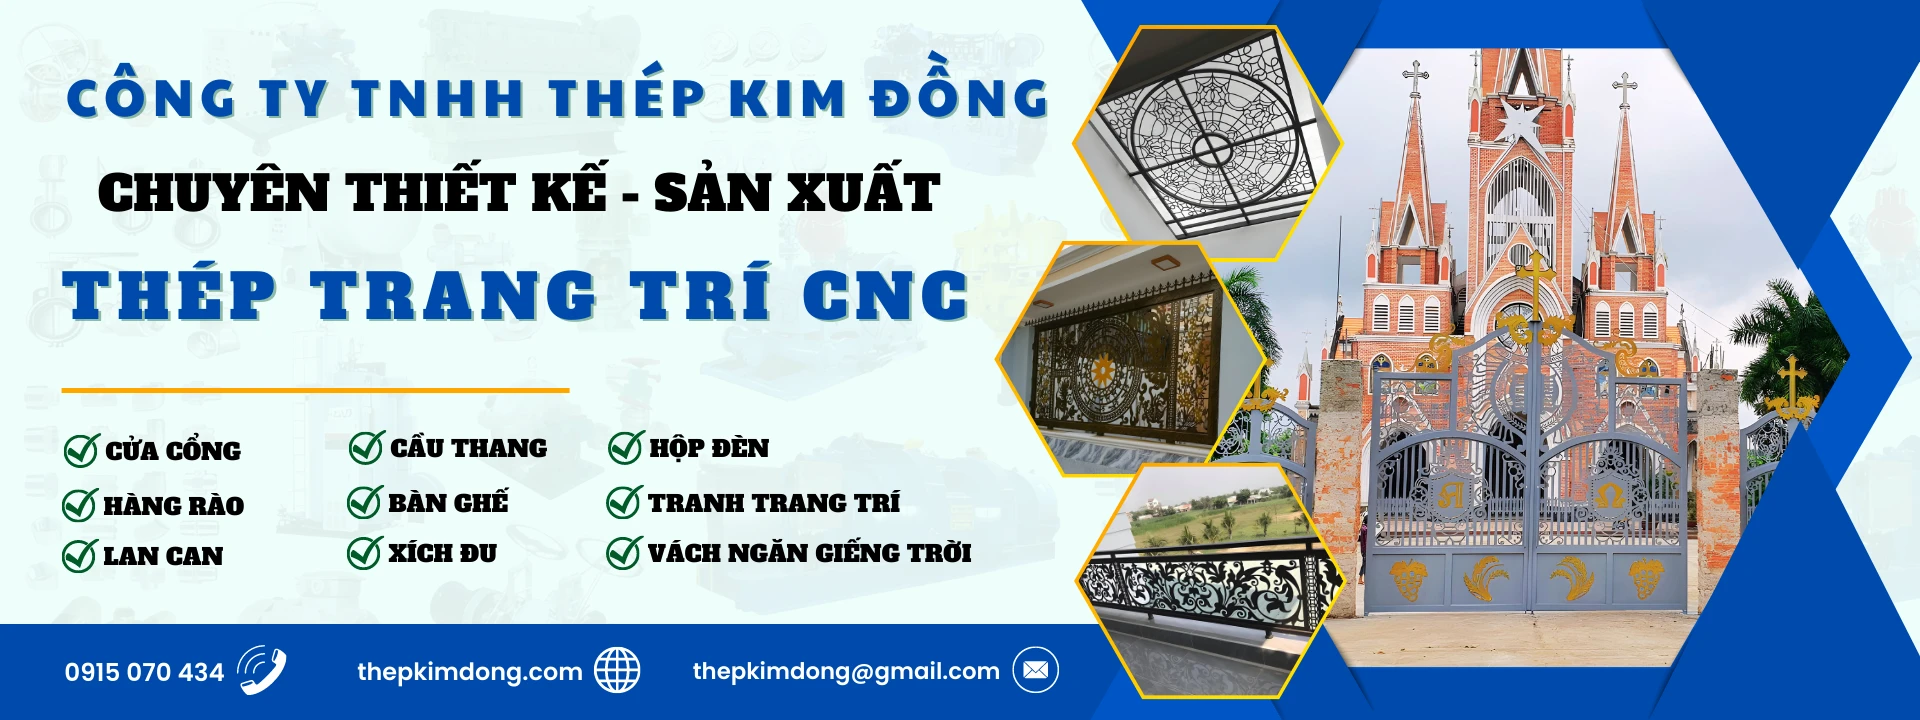 Thép Trang Trí CNC